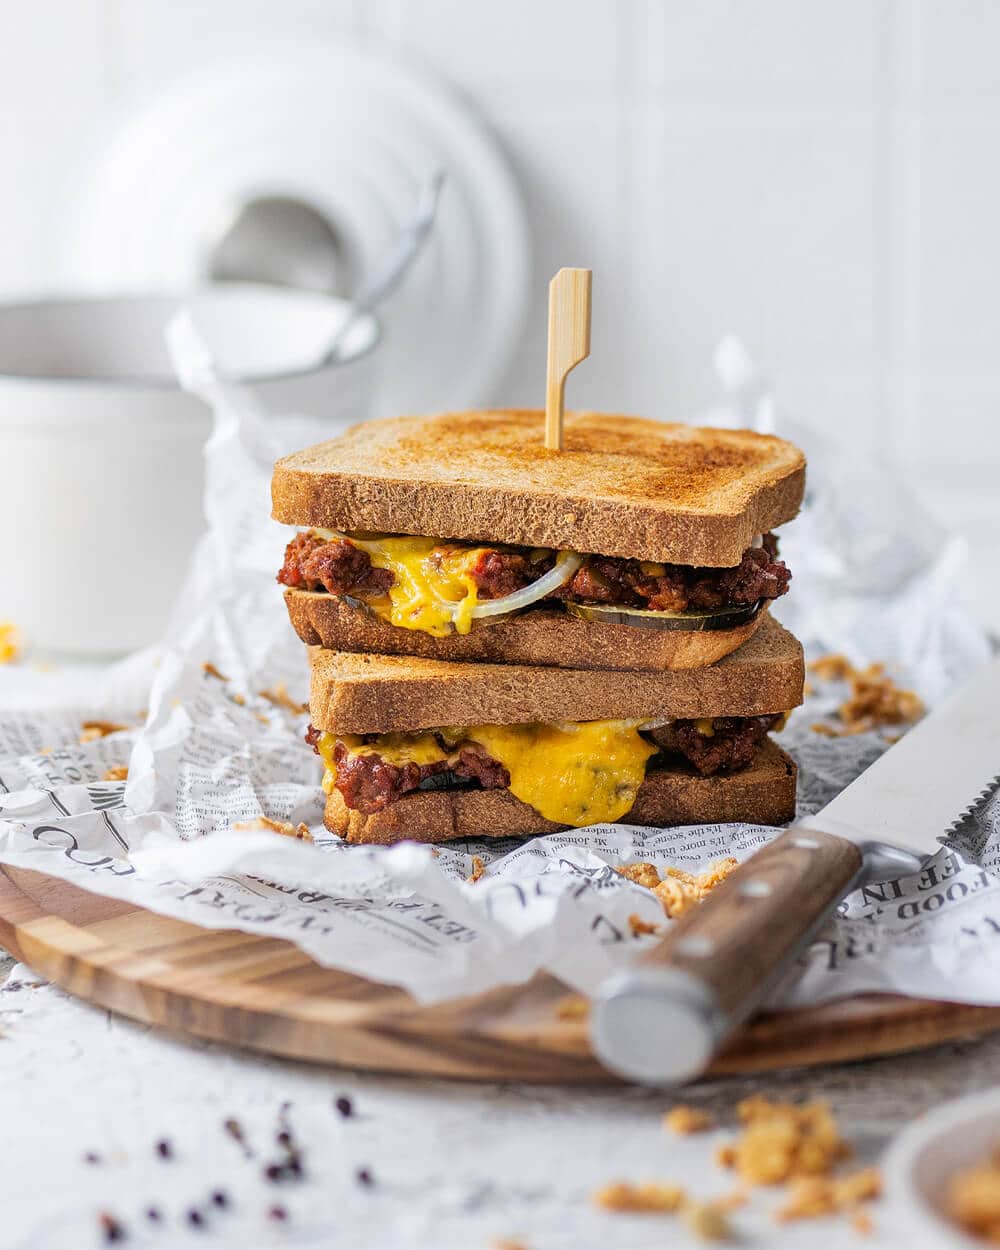 Sloppy Joe Sandwich - der Klassiker als schnelles Abendessen